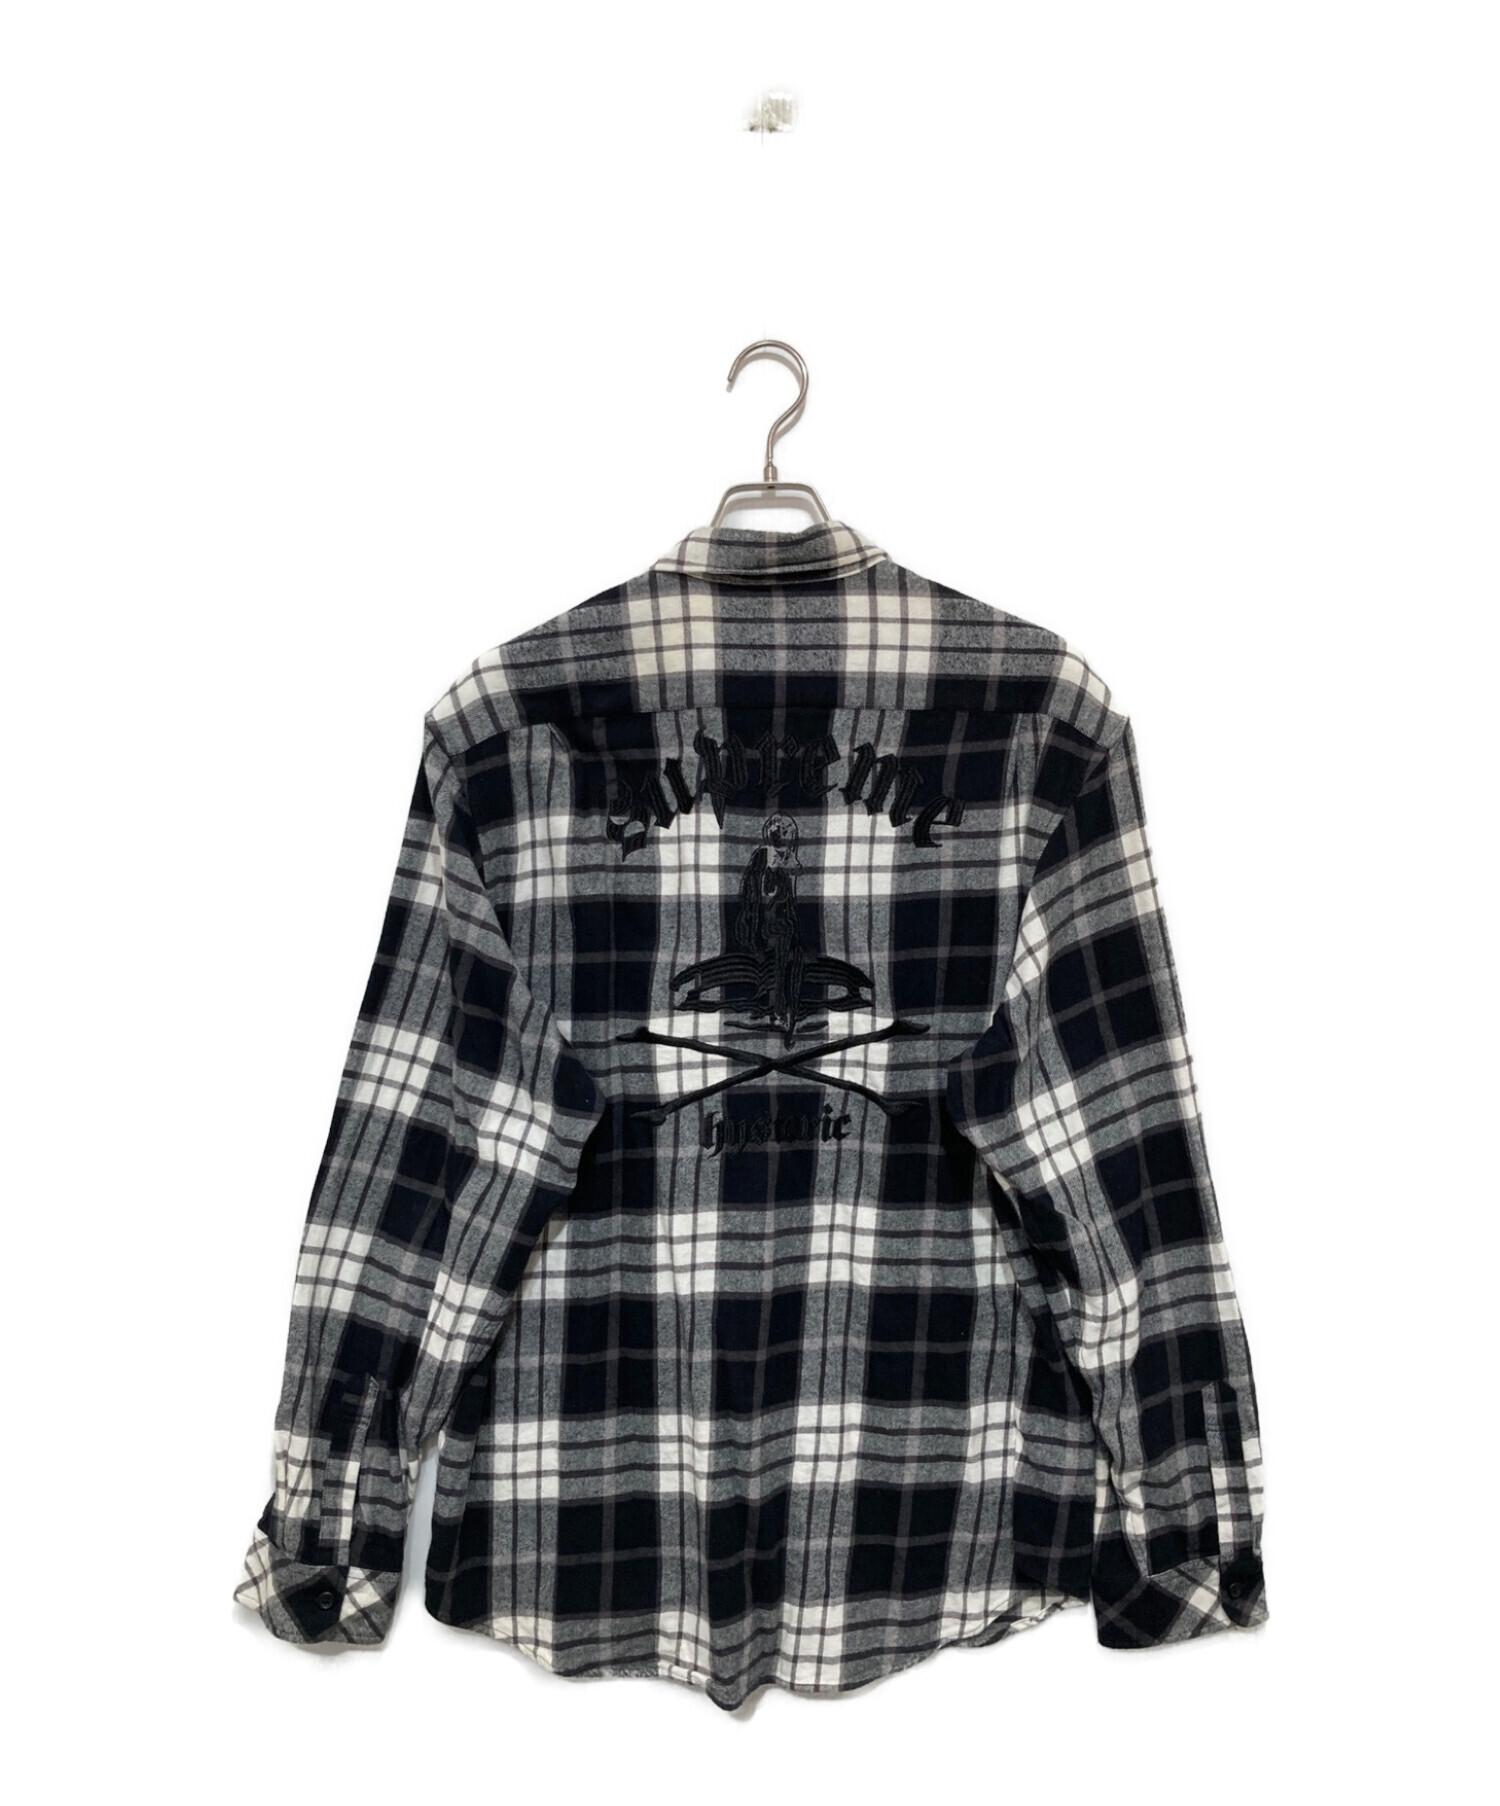 SUPREME (シュプリーム) Hysteric Glamour (ヒステリックグラマー) Plaid Flannel Shirt ブラック  サイズ:XL